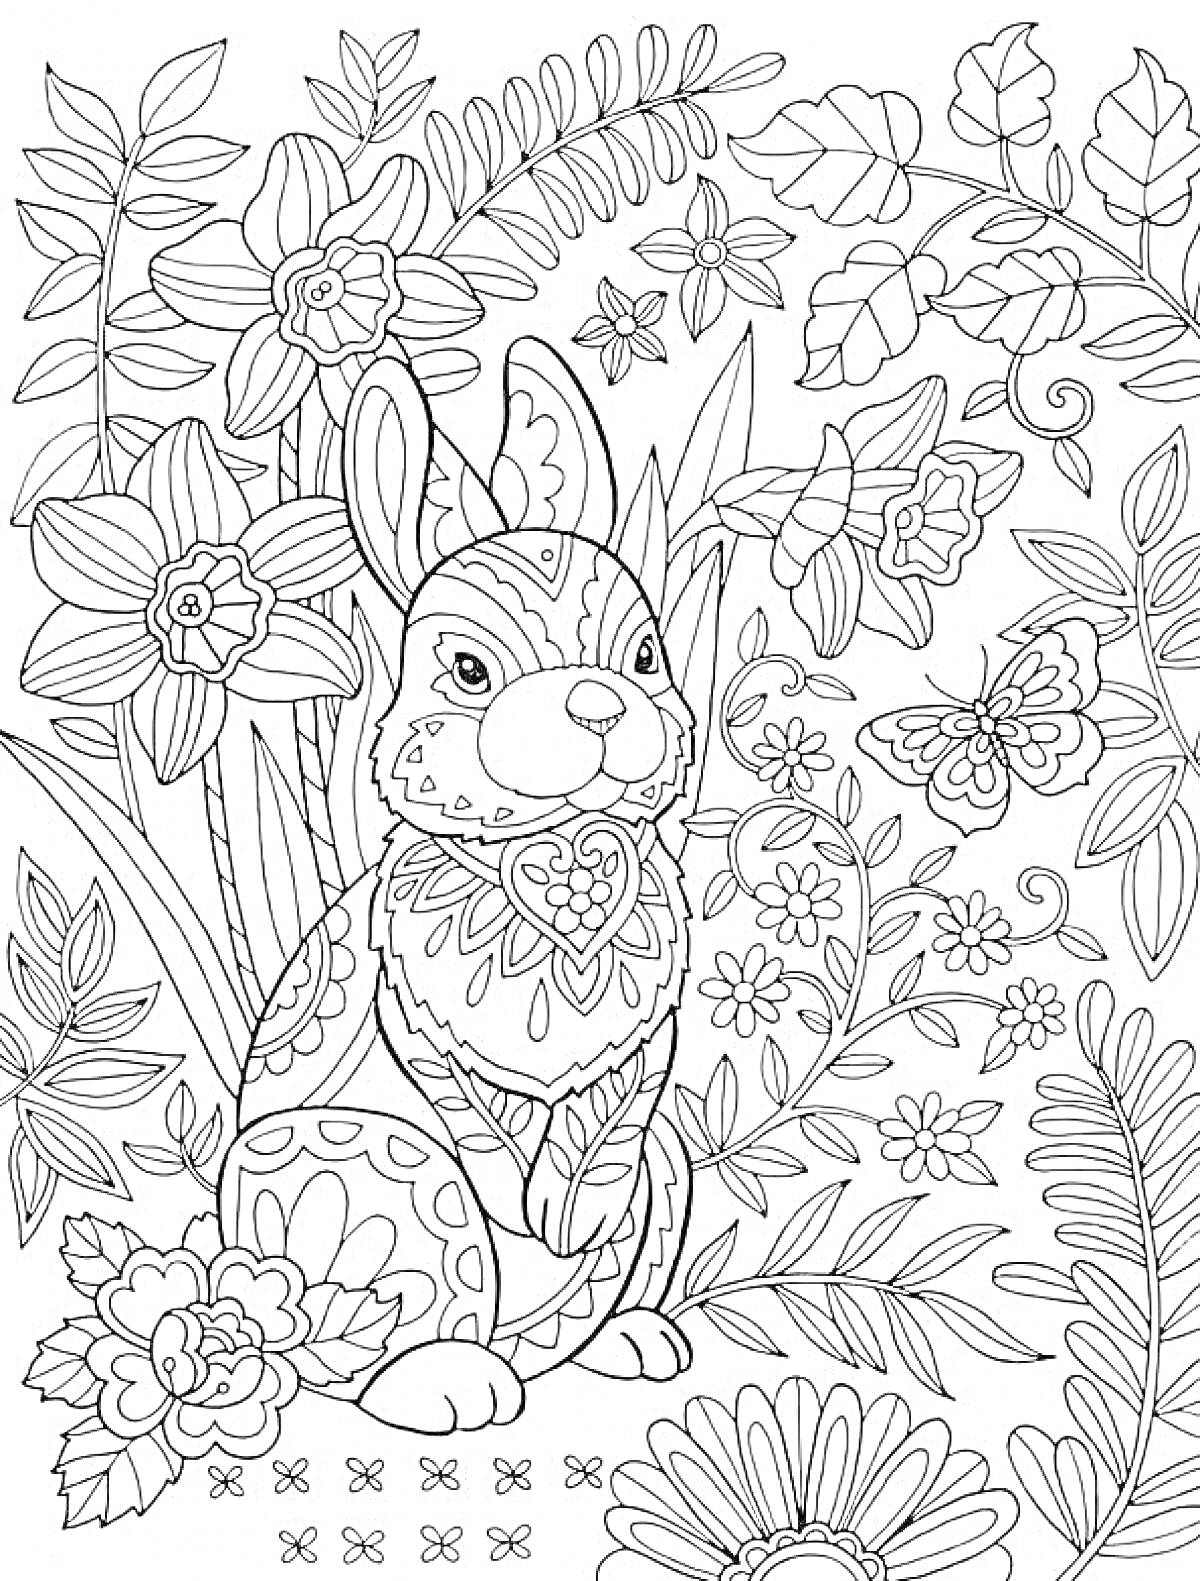 Раскраска Кролик в цветочном саду с бабочкой и узорами